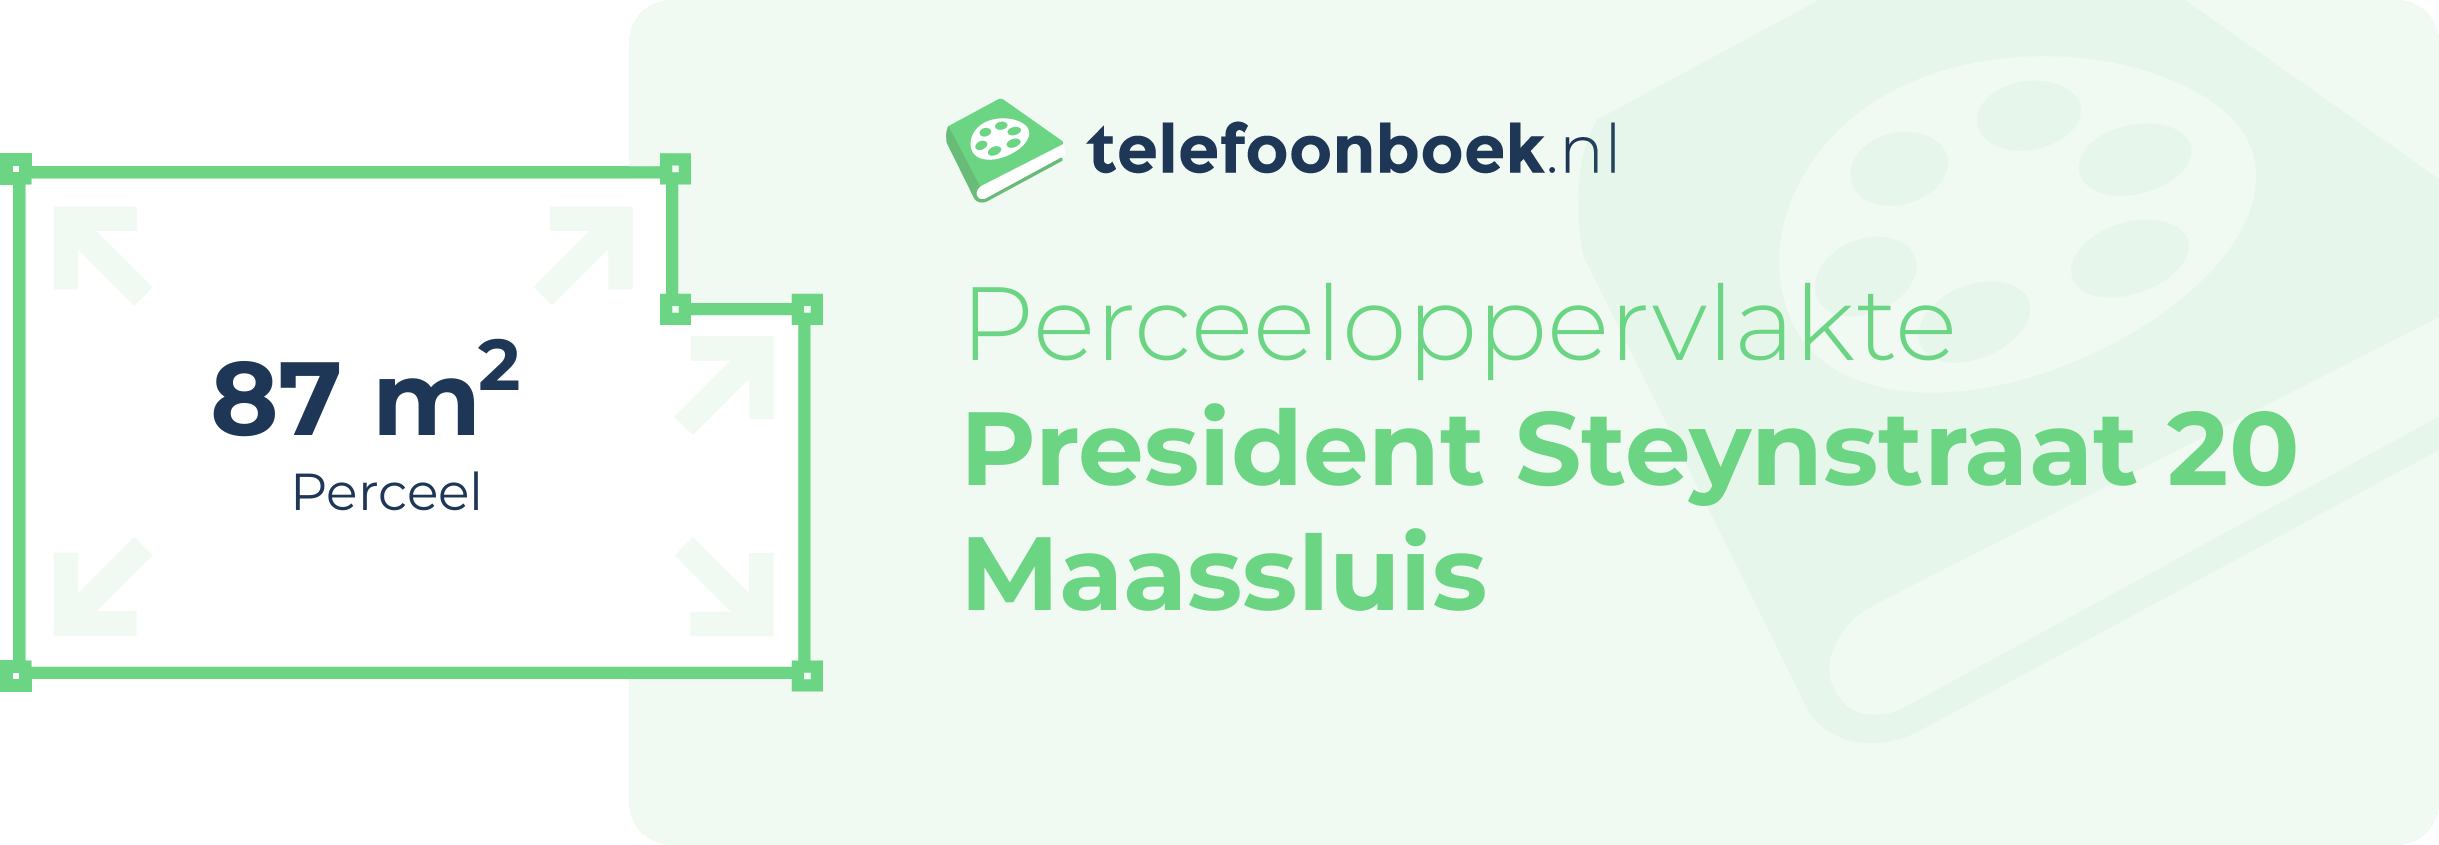 Perceeloppervlakte President Steynstraat 20 Maassluis